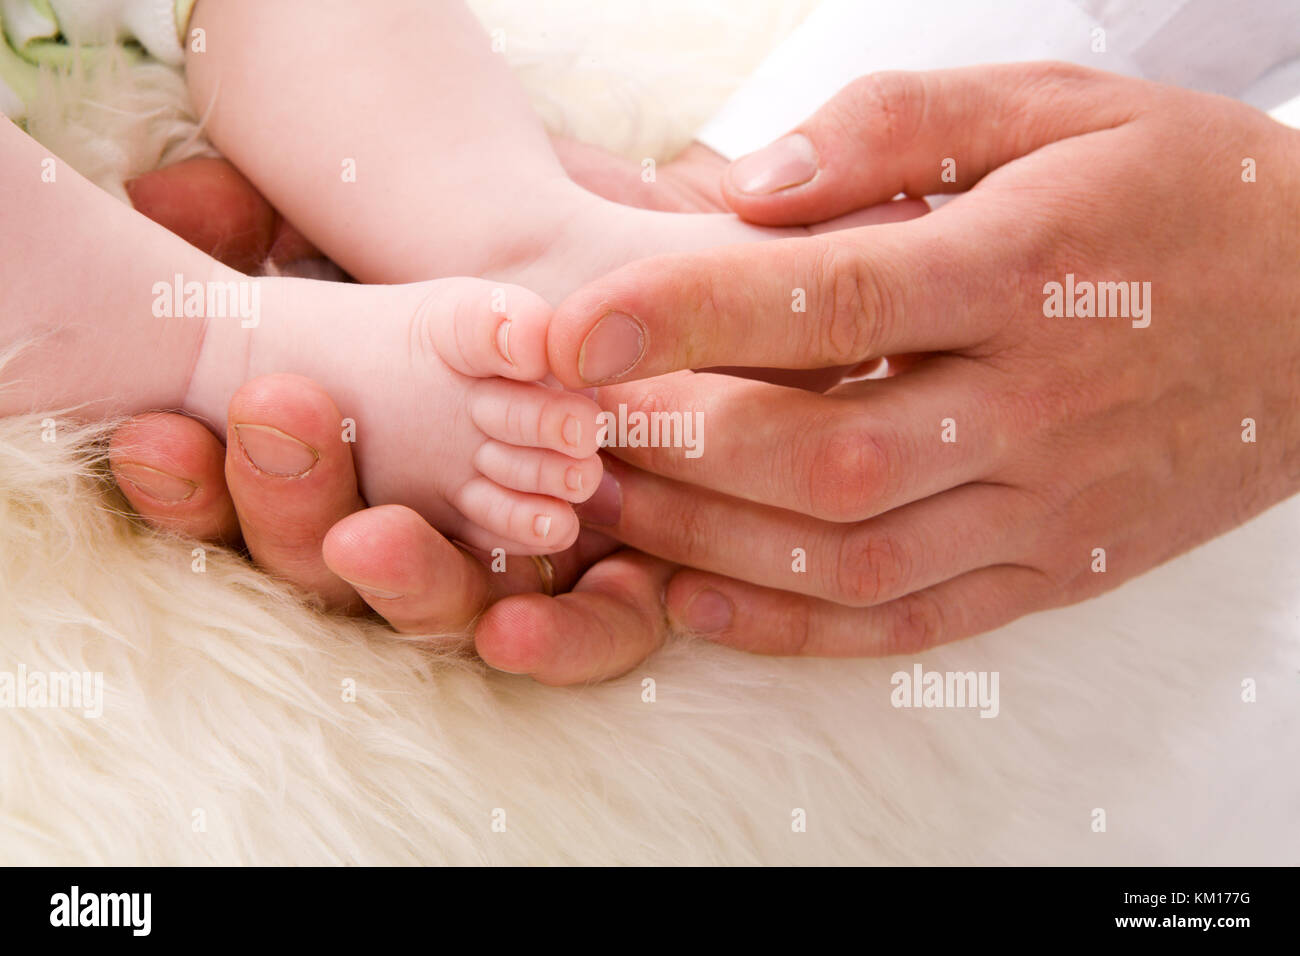 Les pieds de bébé au père Palms sur la fourrure blanche Banque D'Images